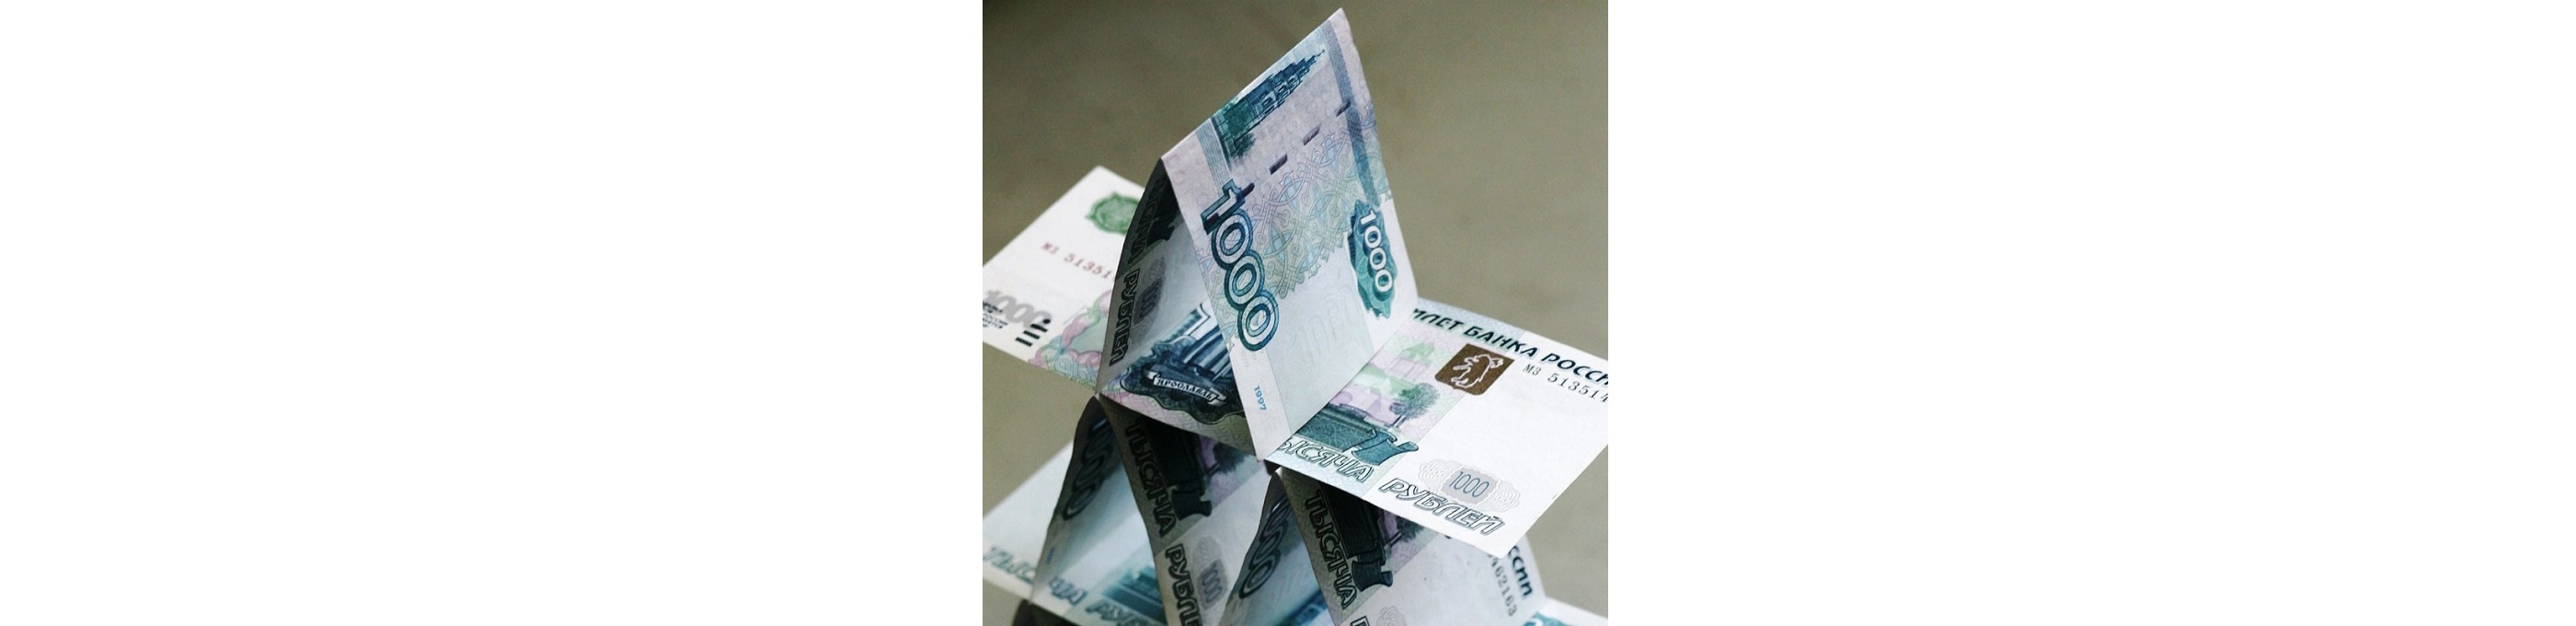 Закрытие финансовых пирамид находящихся в доменной зоне .ru и .рф длиться два месяца. В данный момент Центробанк работает на тем, что-бы существенно сократить этот срок